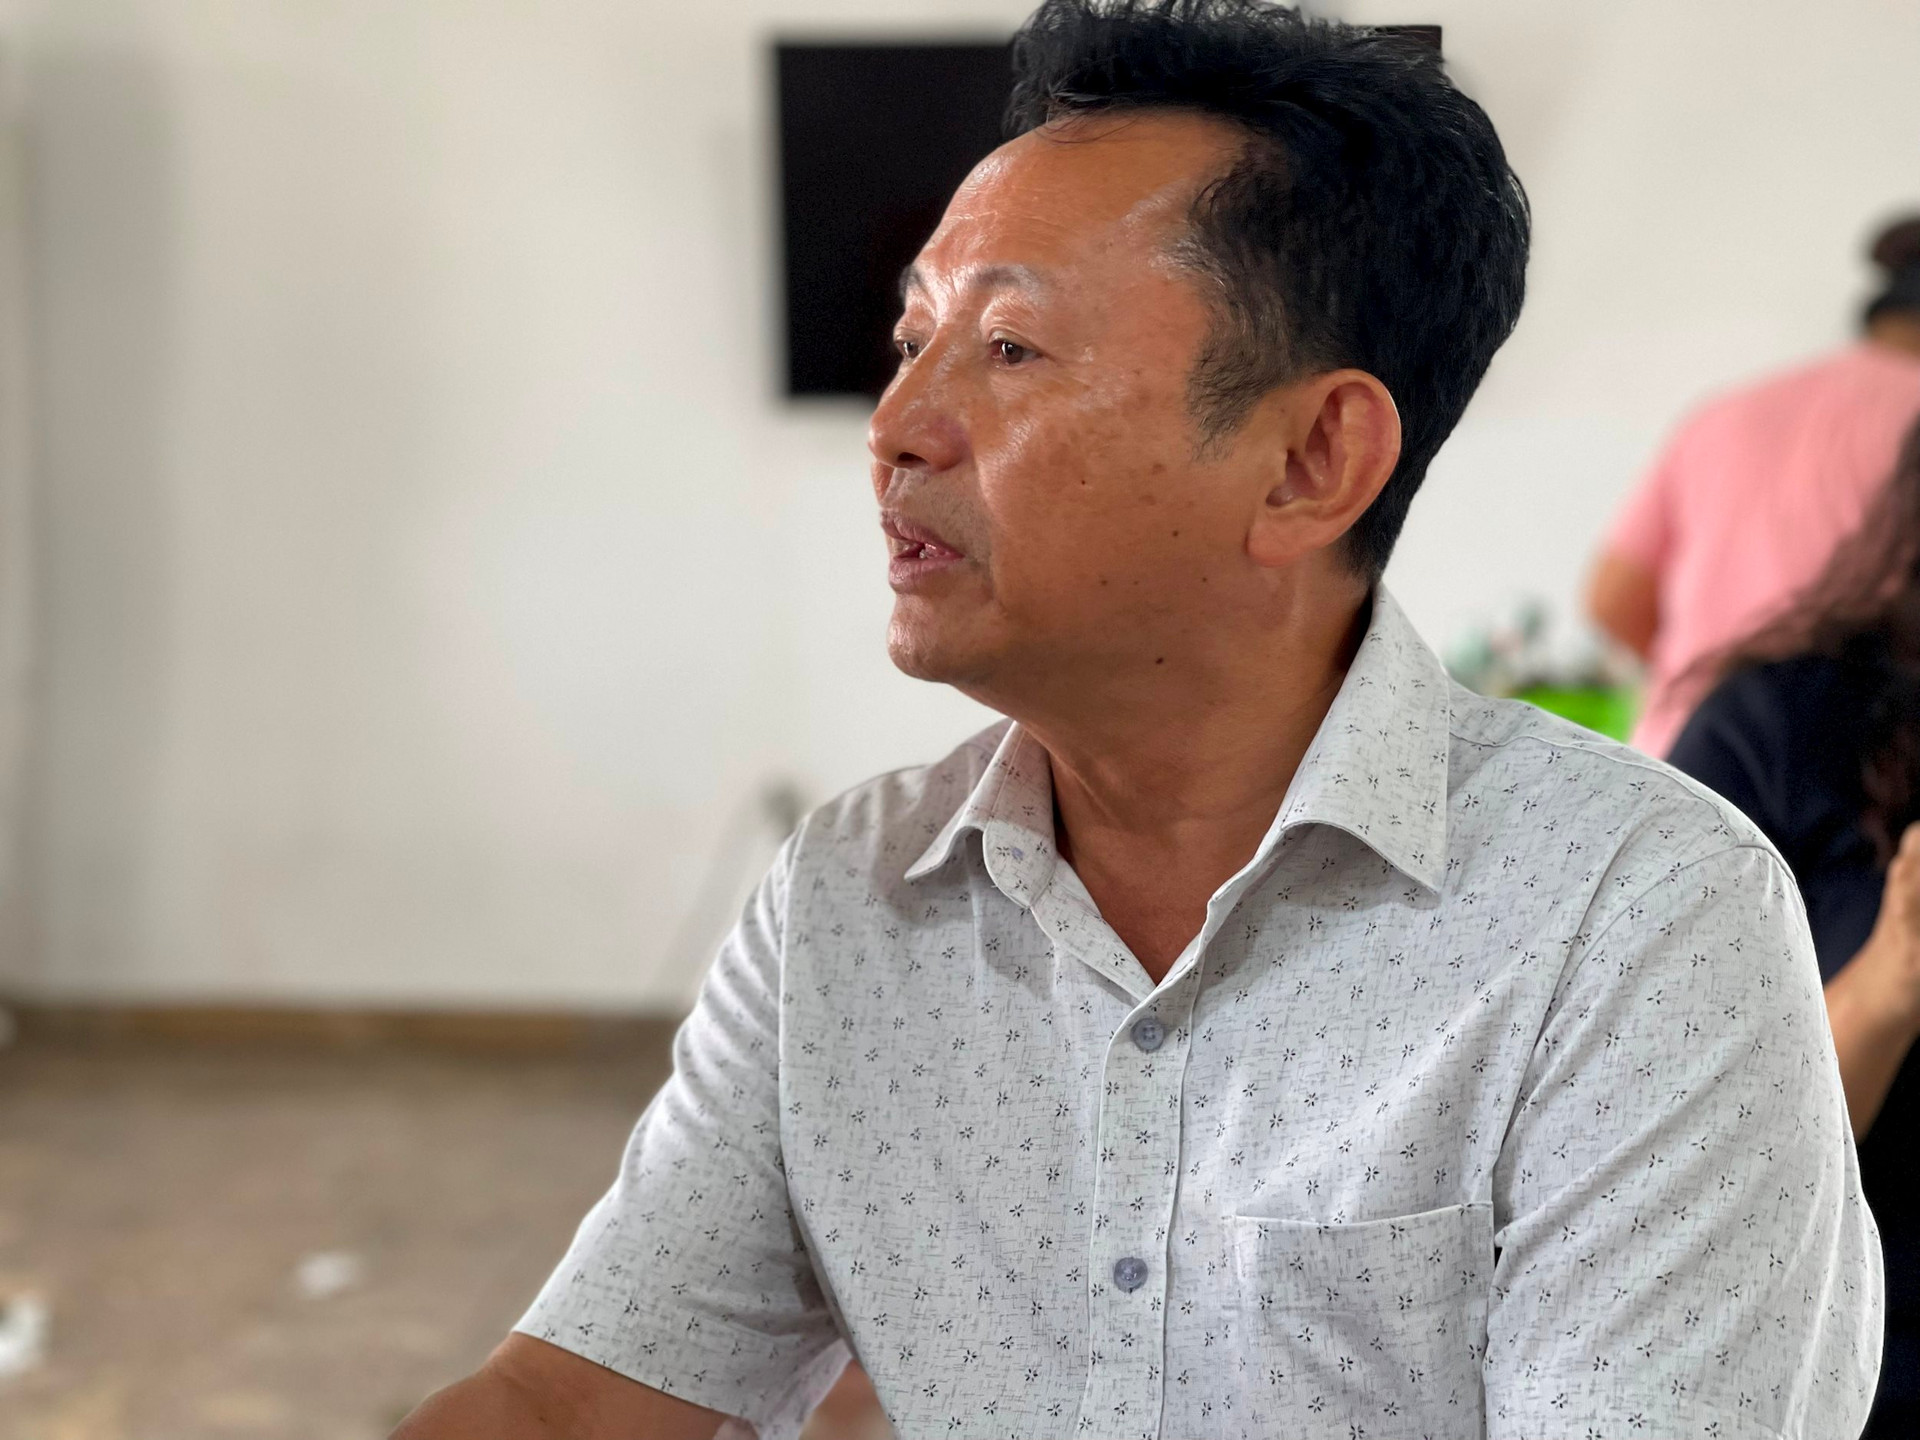 Ông Trần Văn Dai ở HAGL: 2 năm không lương dù là công thần từ “heo ăn chuối” đến “tuần hoàn 100%” không 1 giọt thải ra môi trường